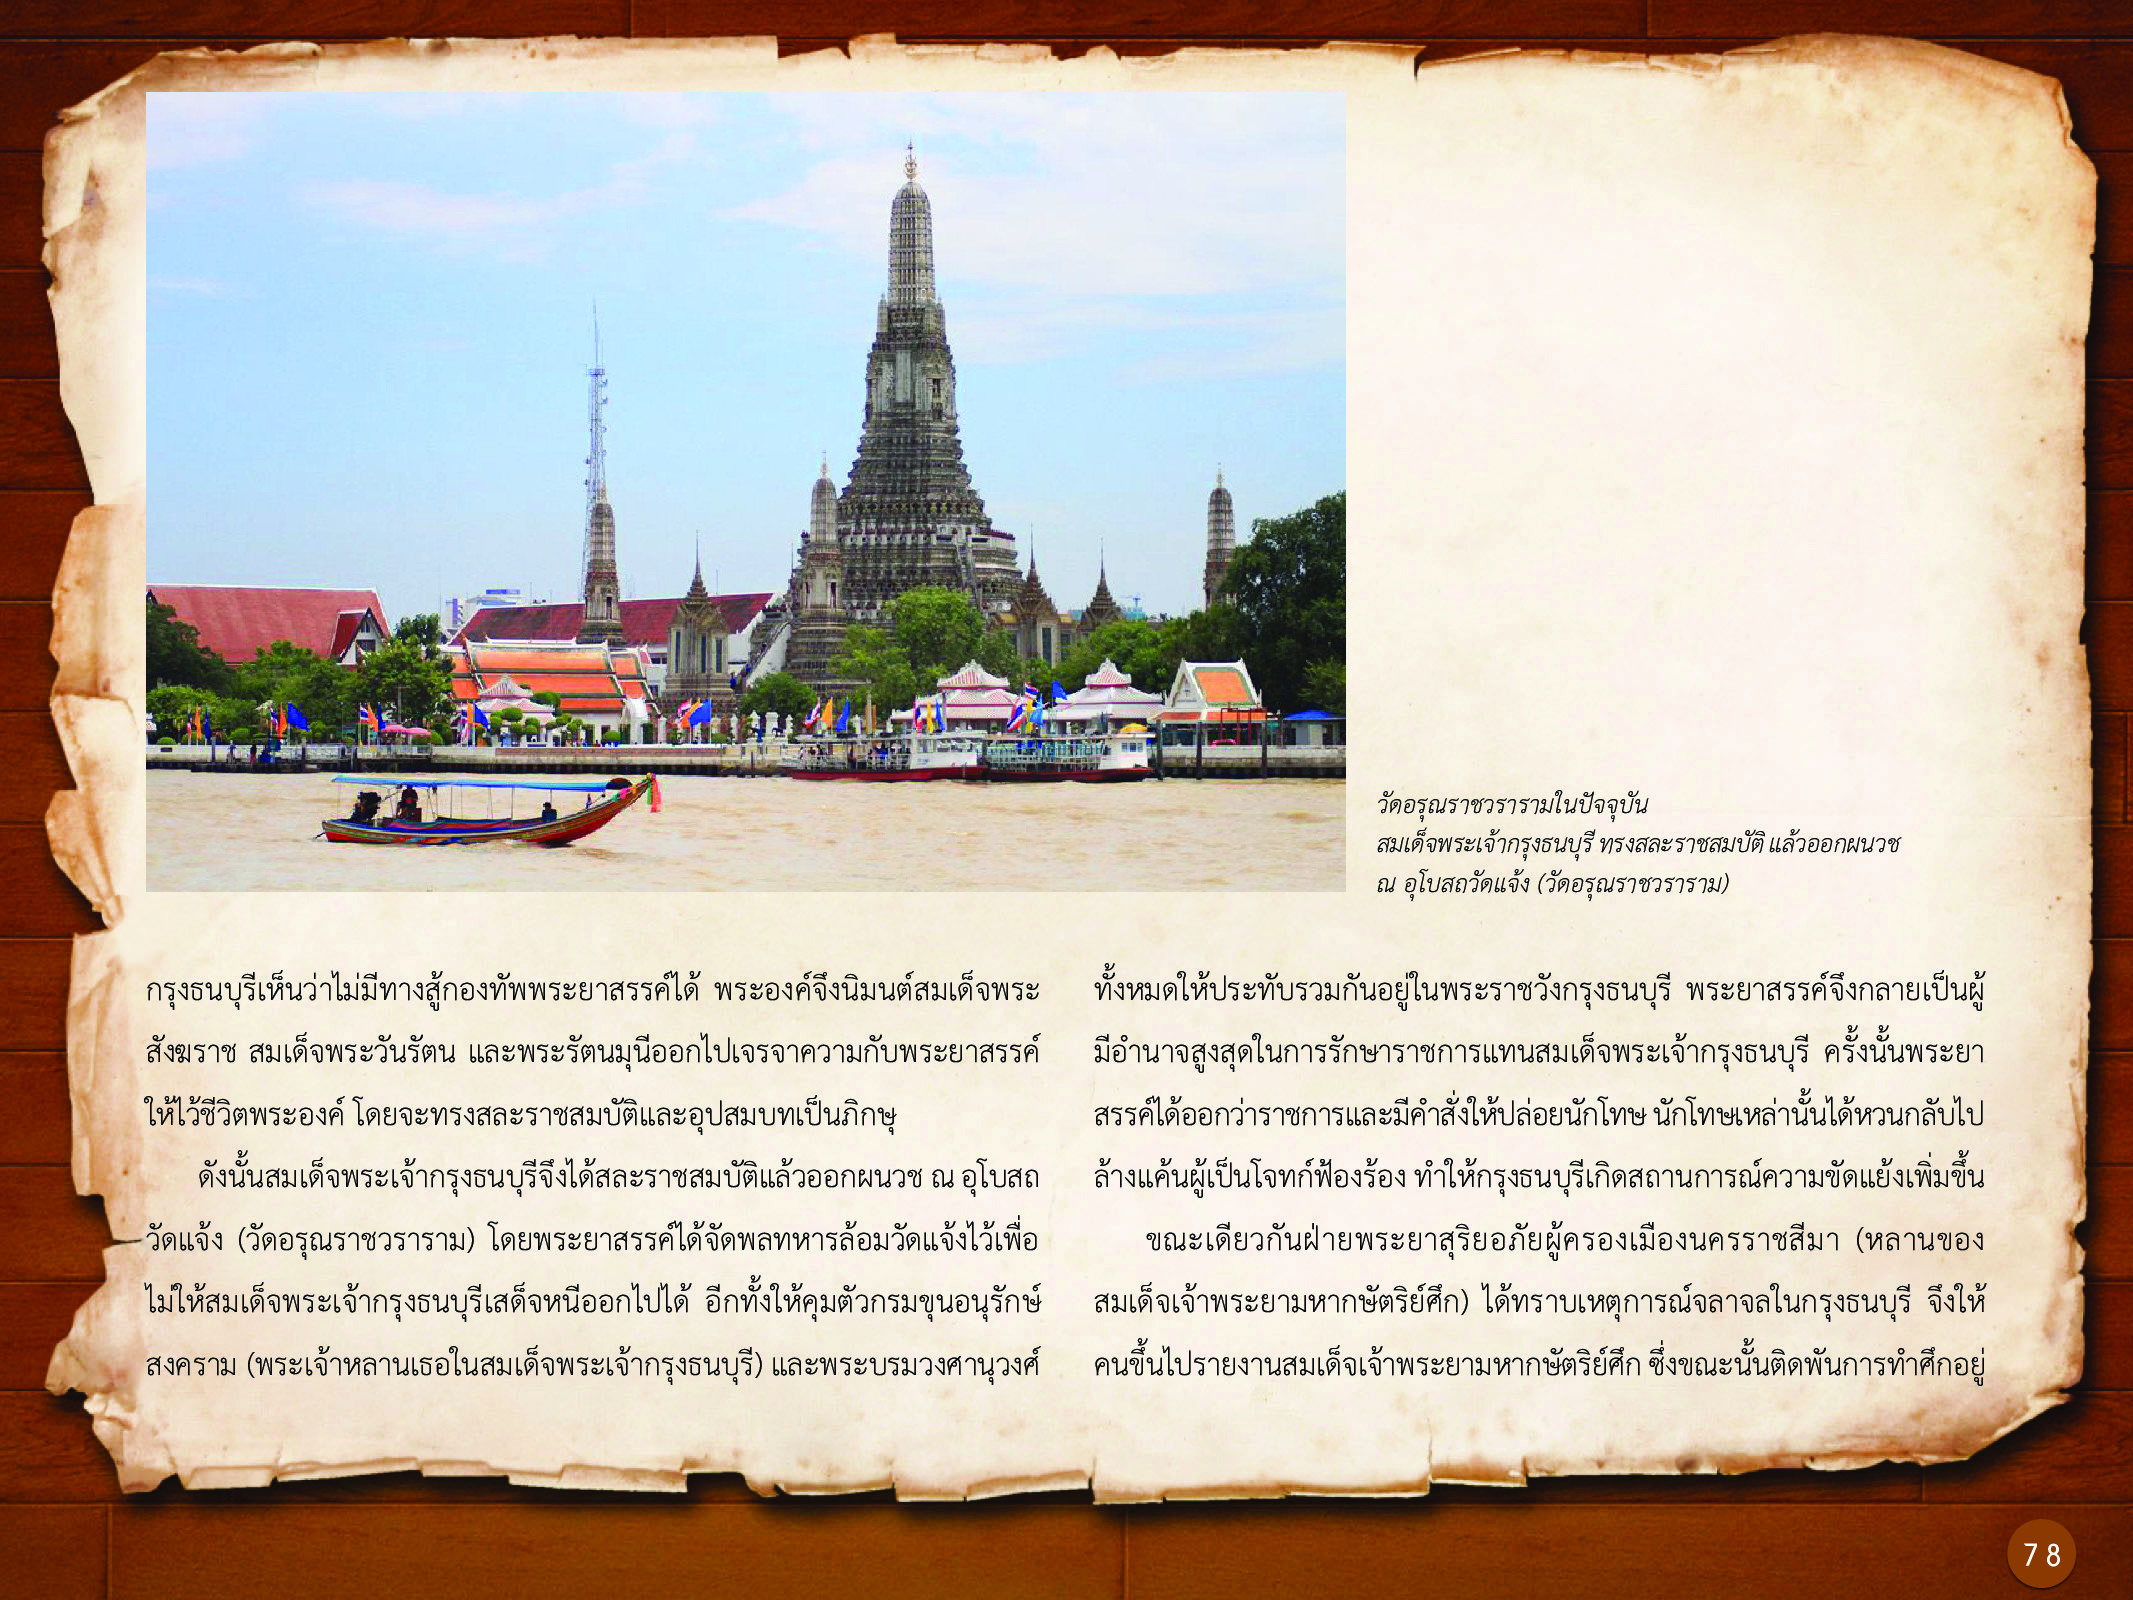 ประวัติศาสตร์กรุงธนบุรี ./images/history_dhonburi/78.jpg